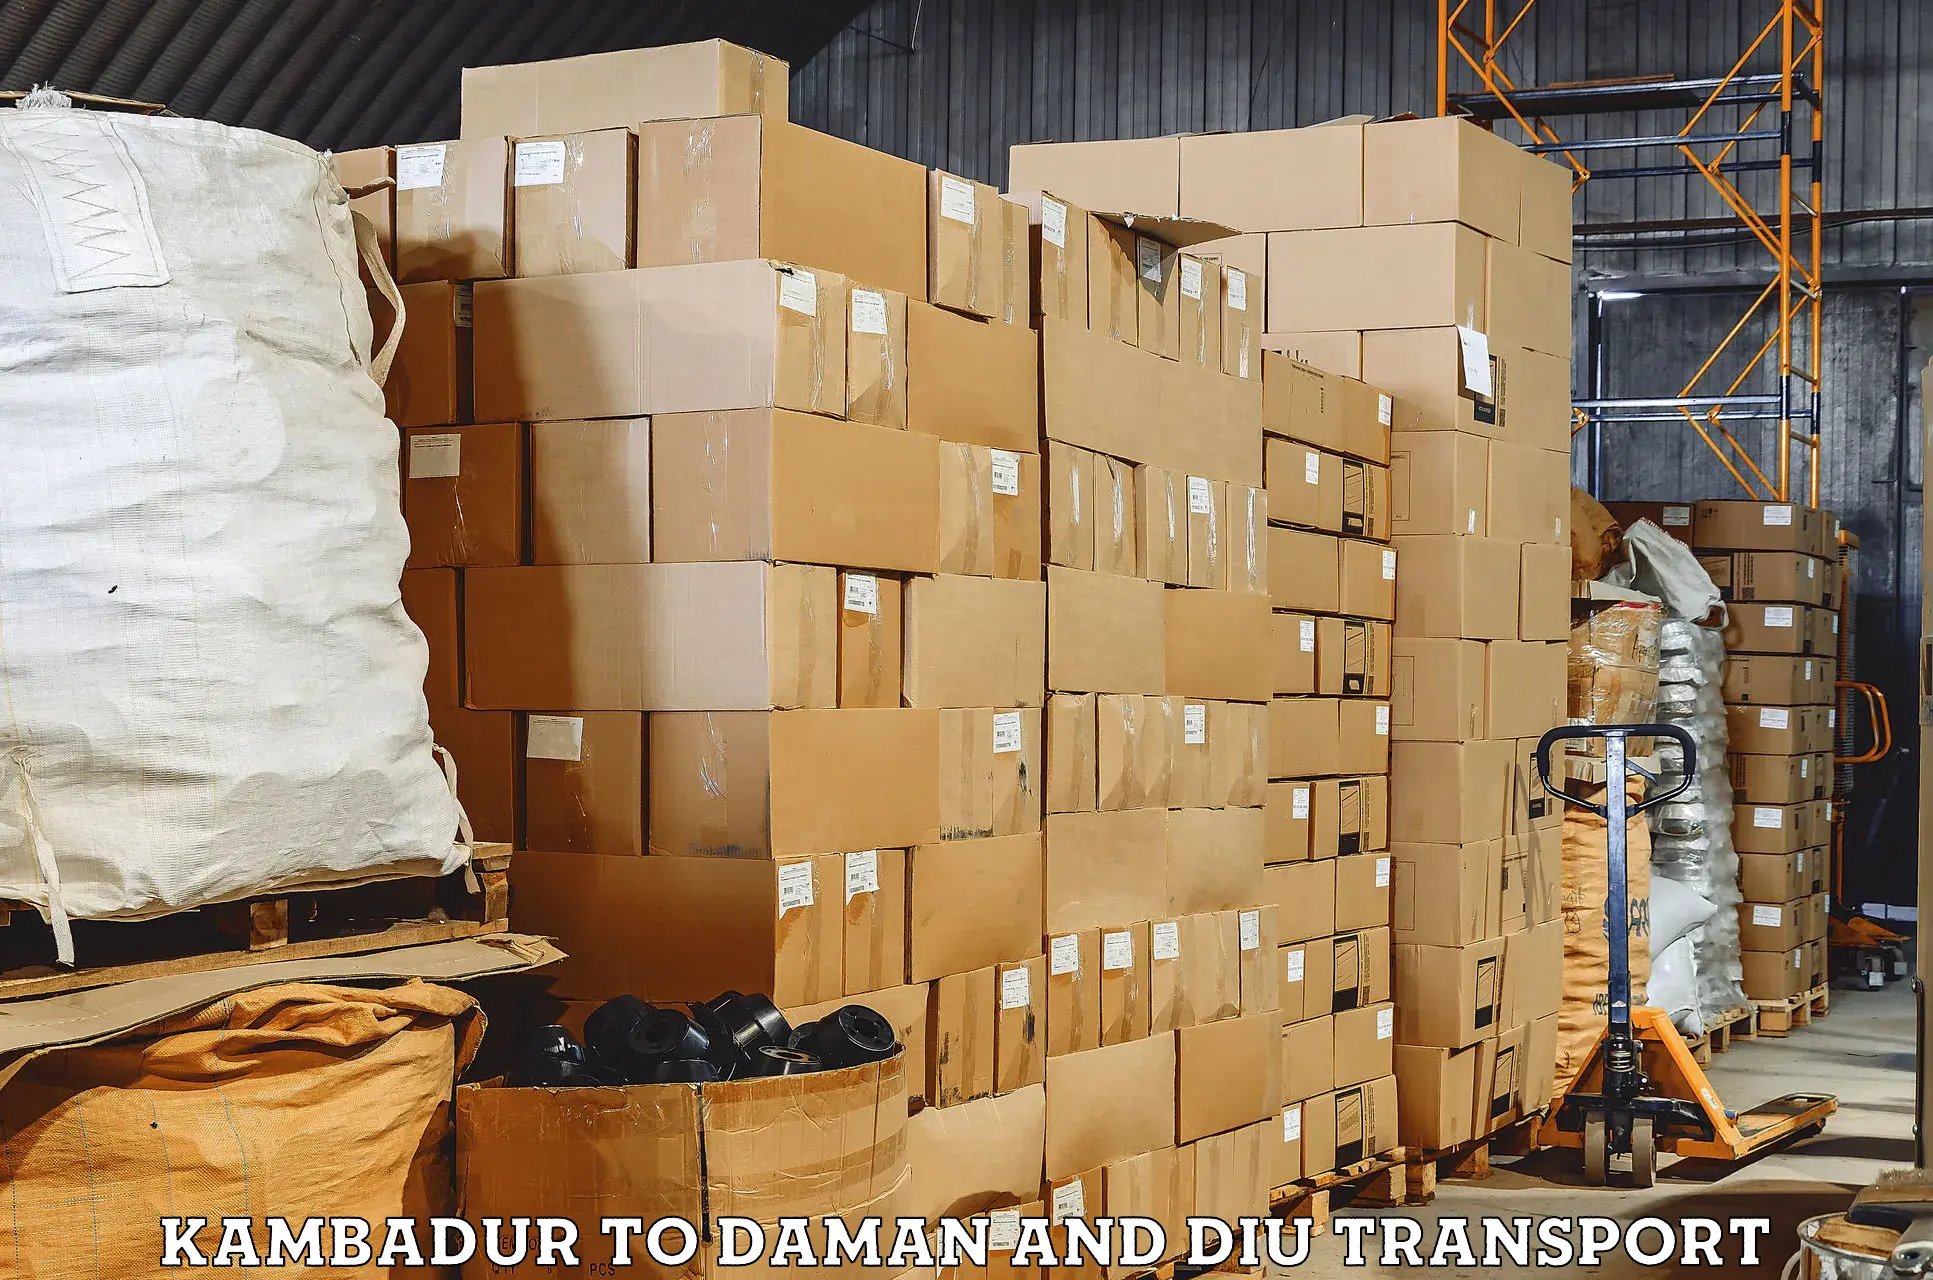 Daily parcel service transport Kambadur to Daman and Diu